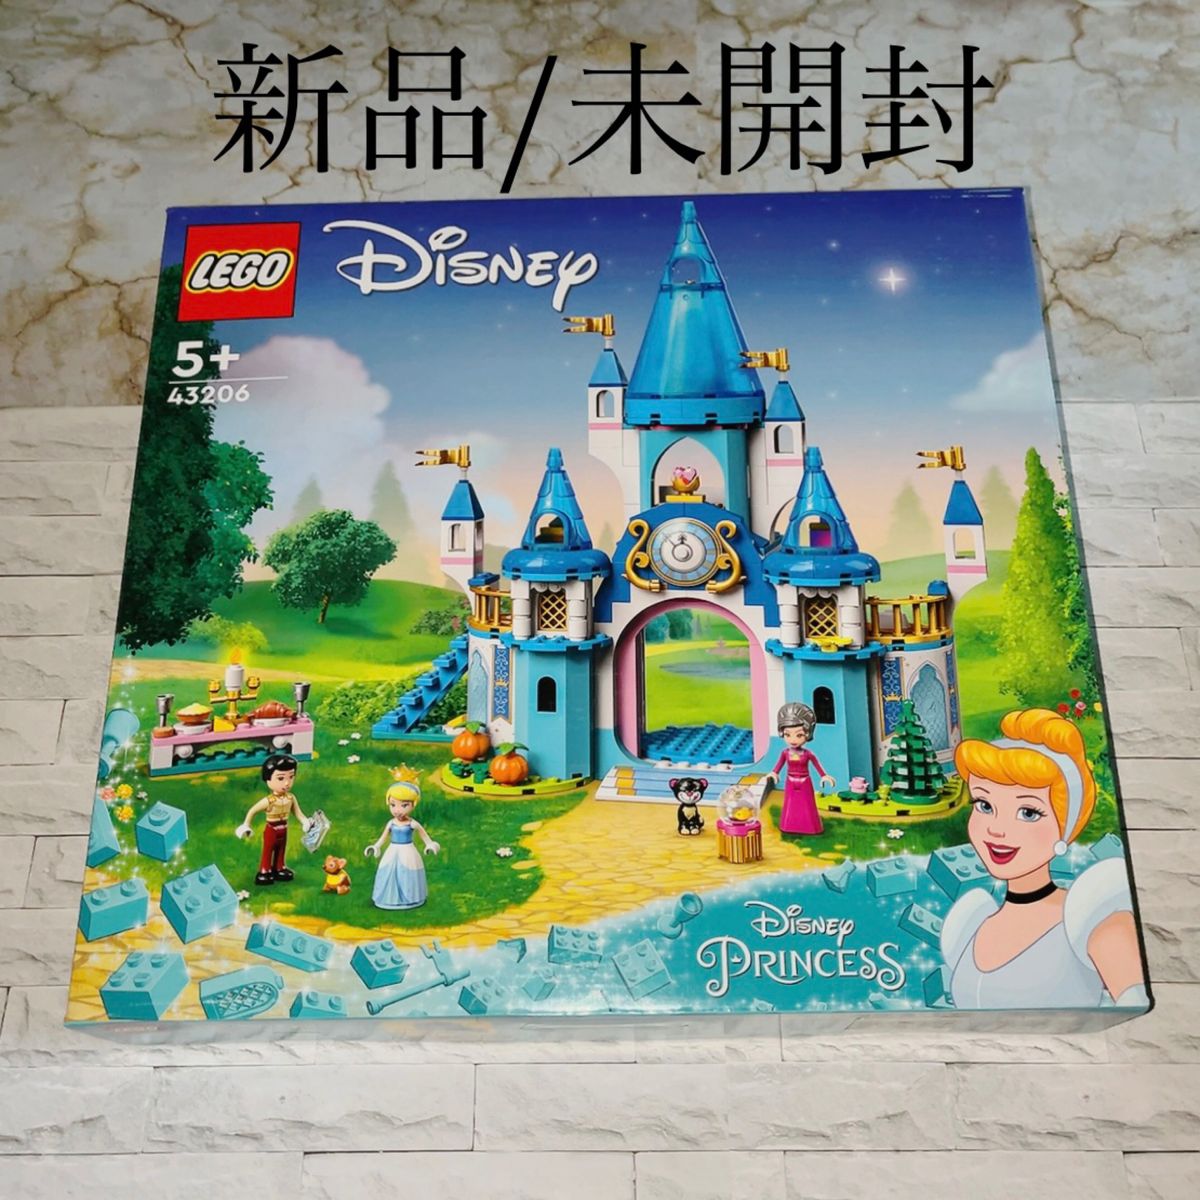 ◆レゴ(LEGO) 43206 ◆ディズニープリンセス シンデレラとプリンス・チャーミングのステキなお城 ◆新品/未開封